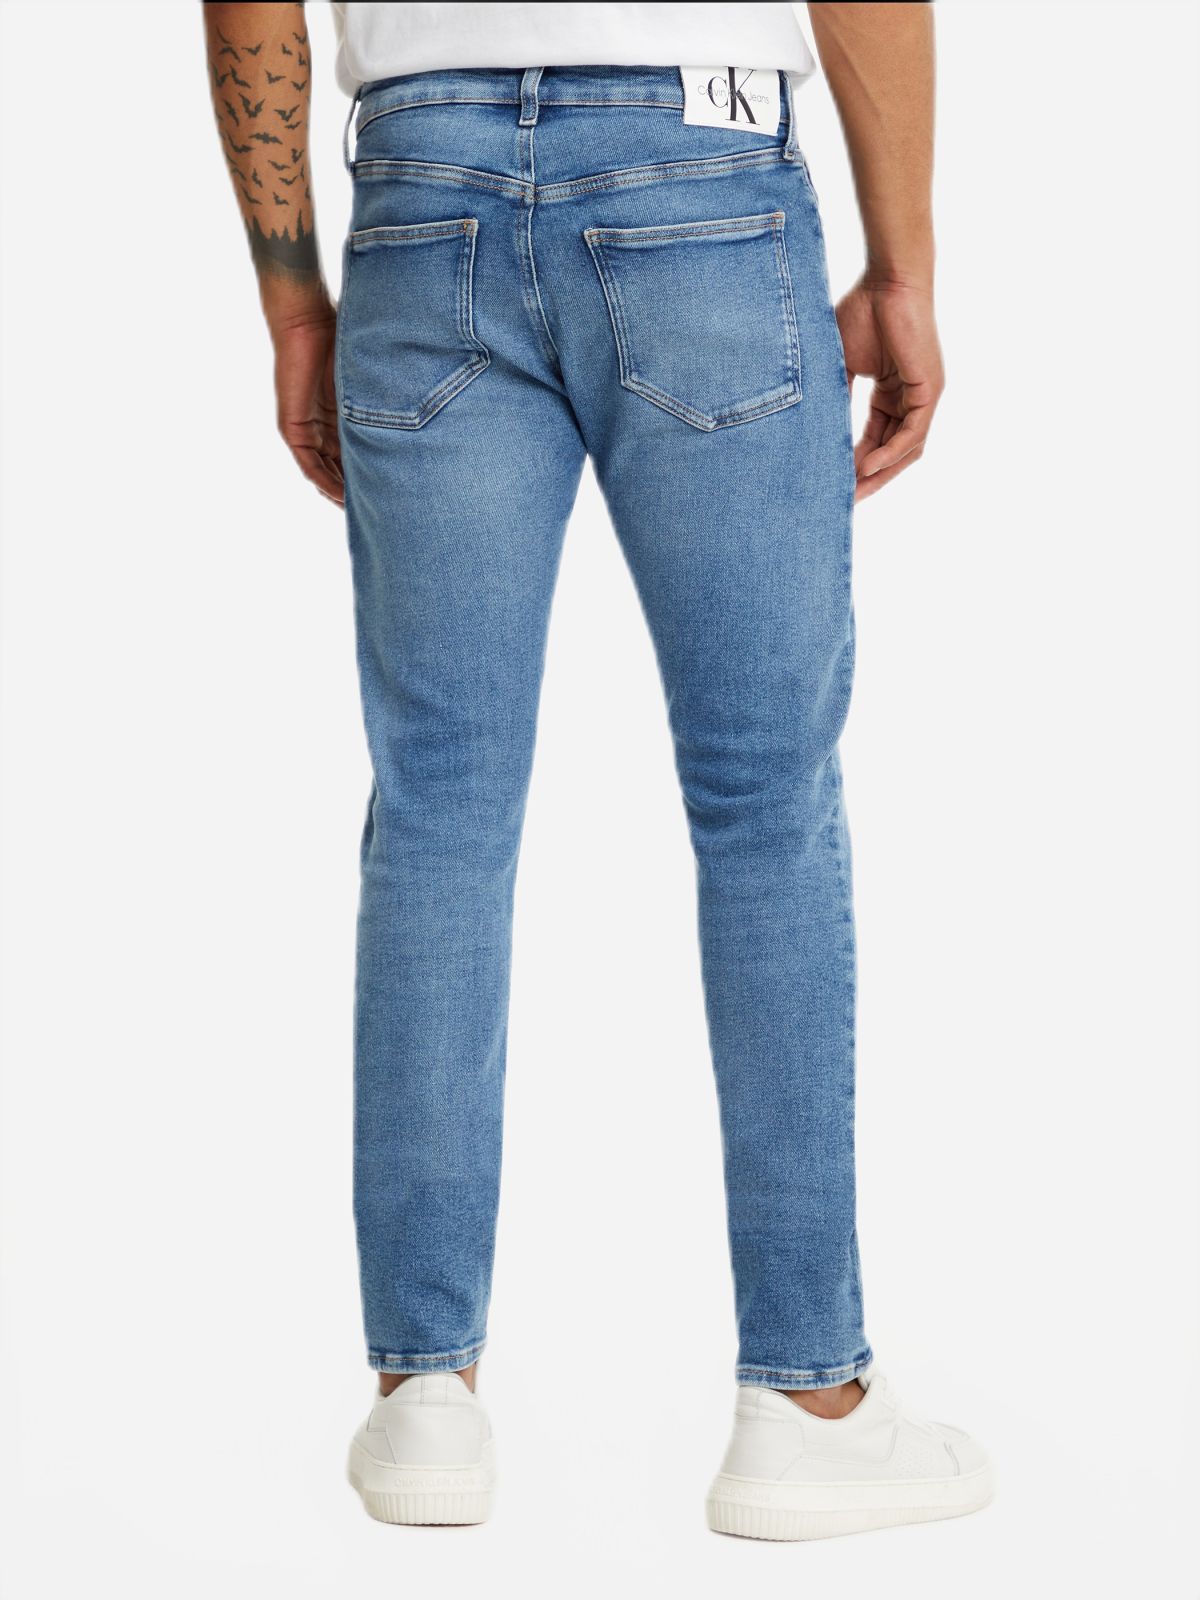  ג'ינס בגזרת SKINNY של CALVIN KLEIN